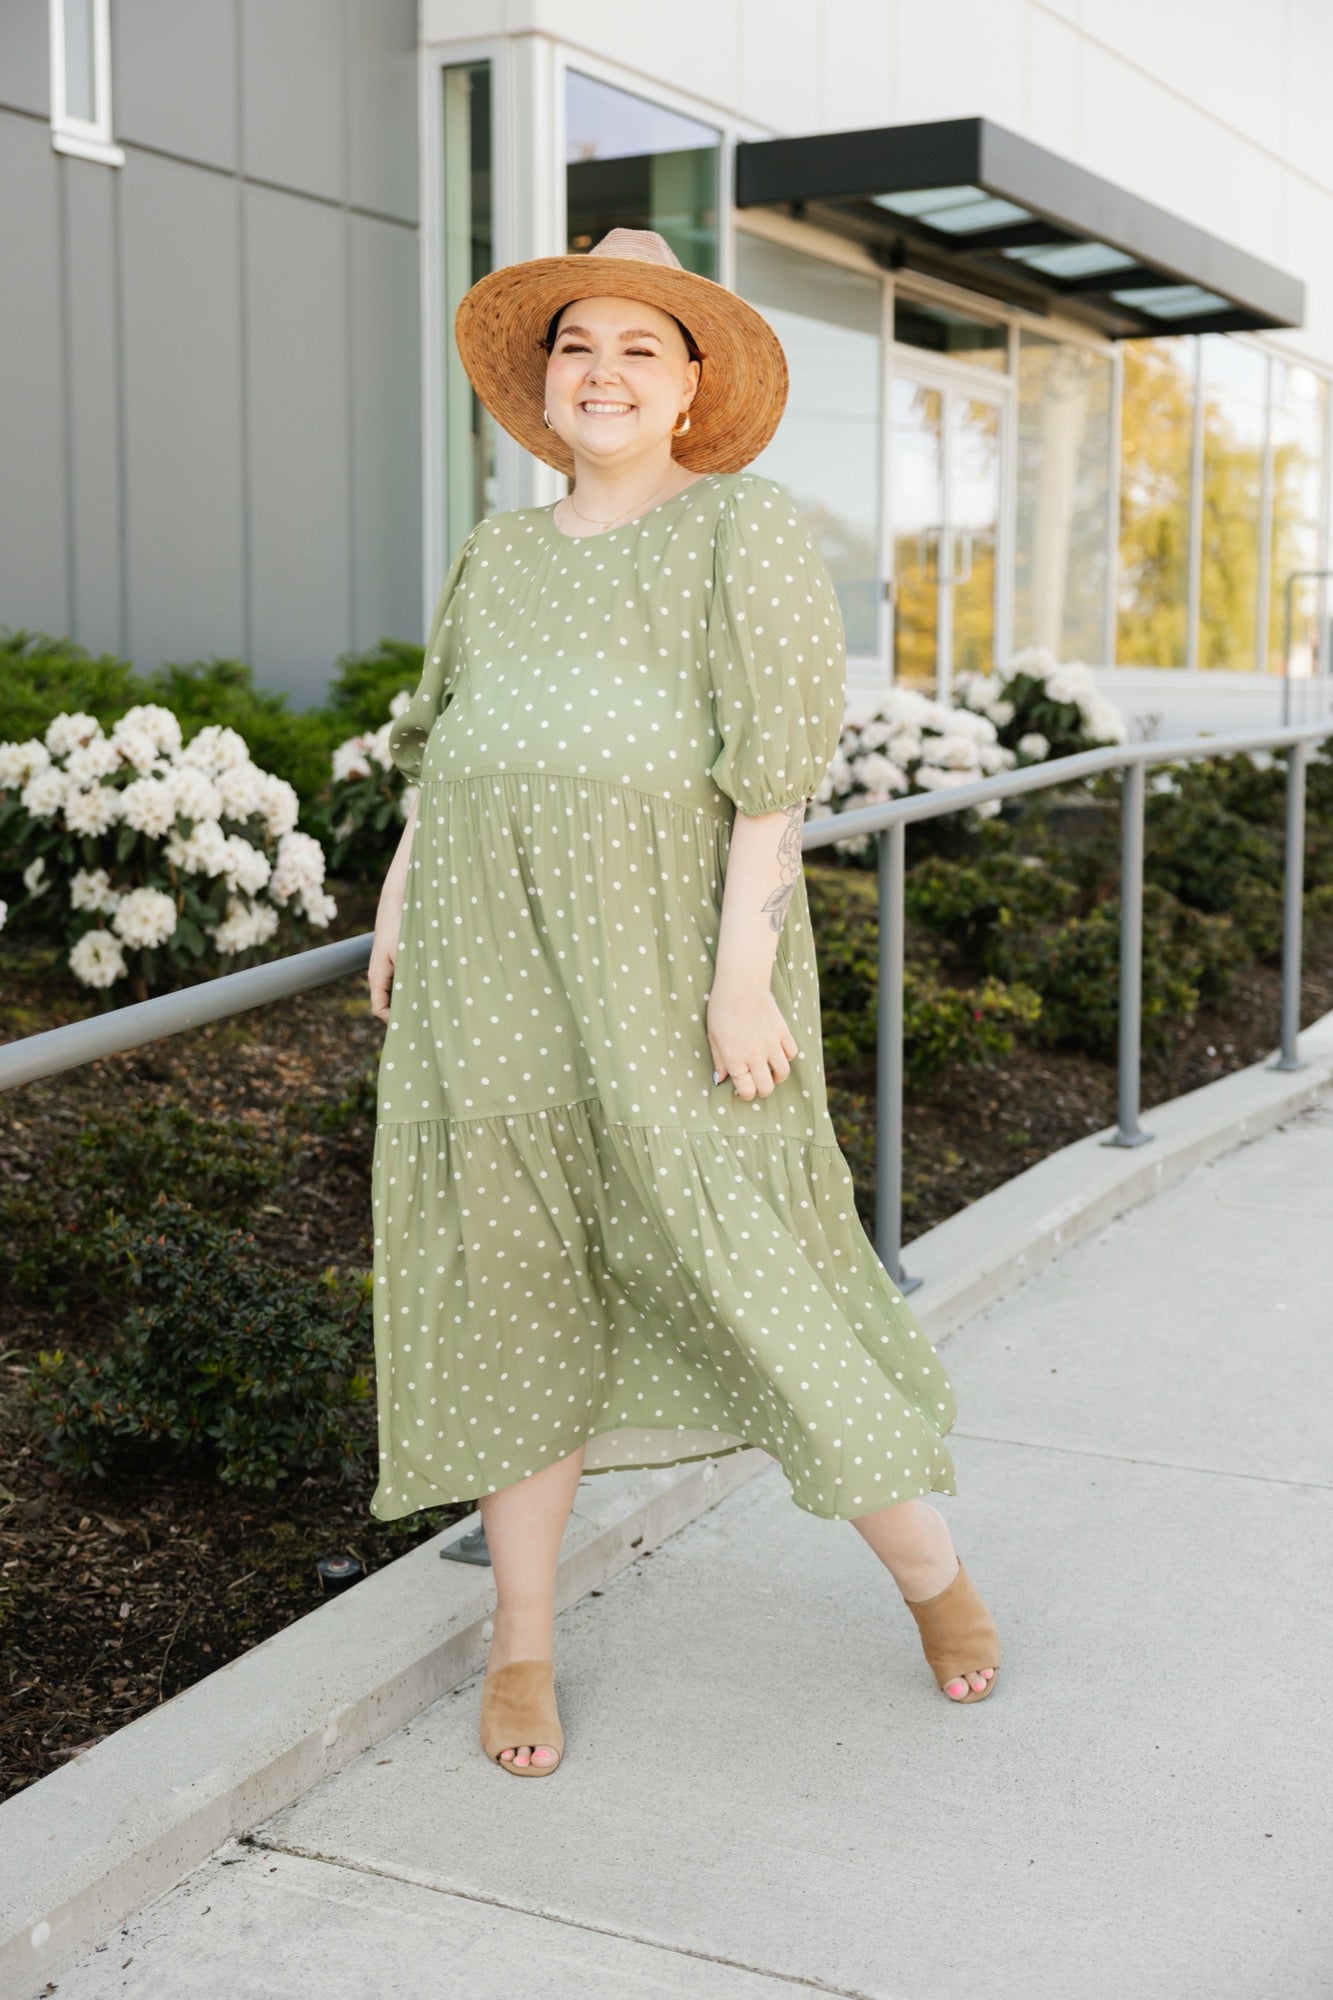 Boardwalk Maxi Dress in Green/Cream Polka Dot